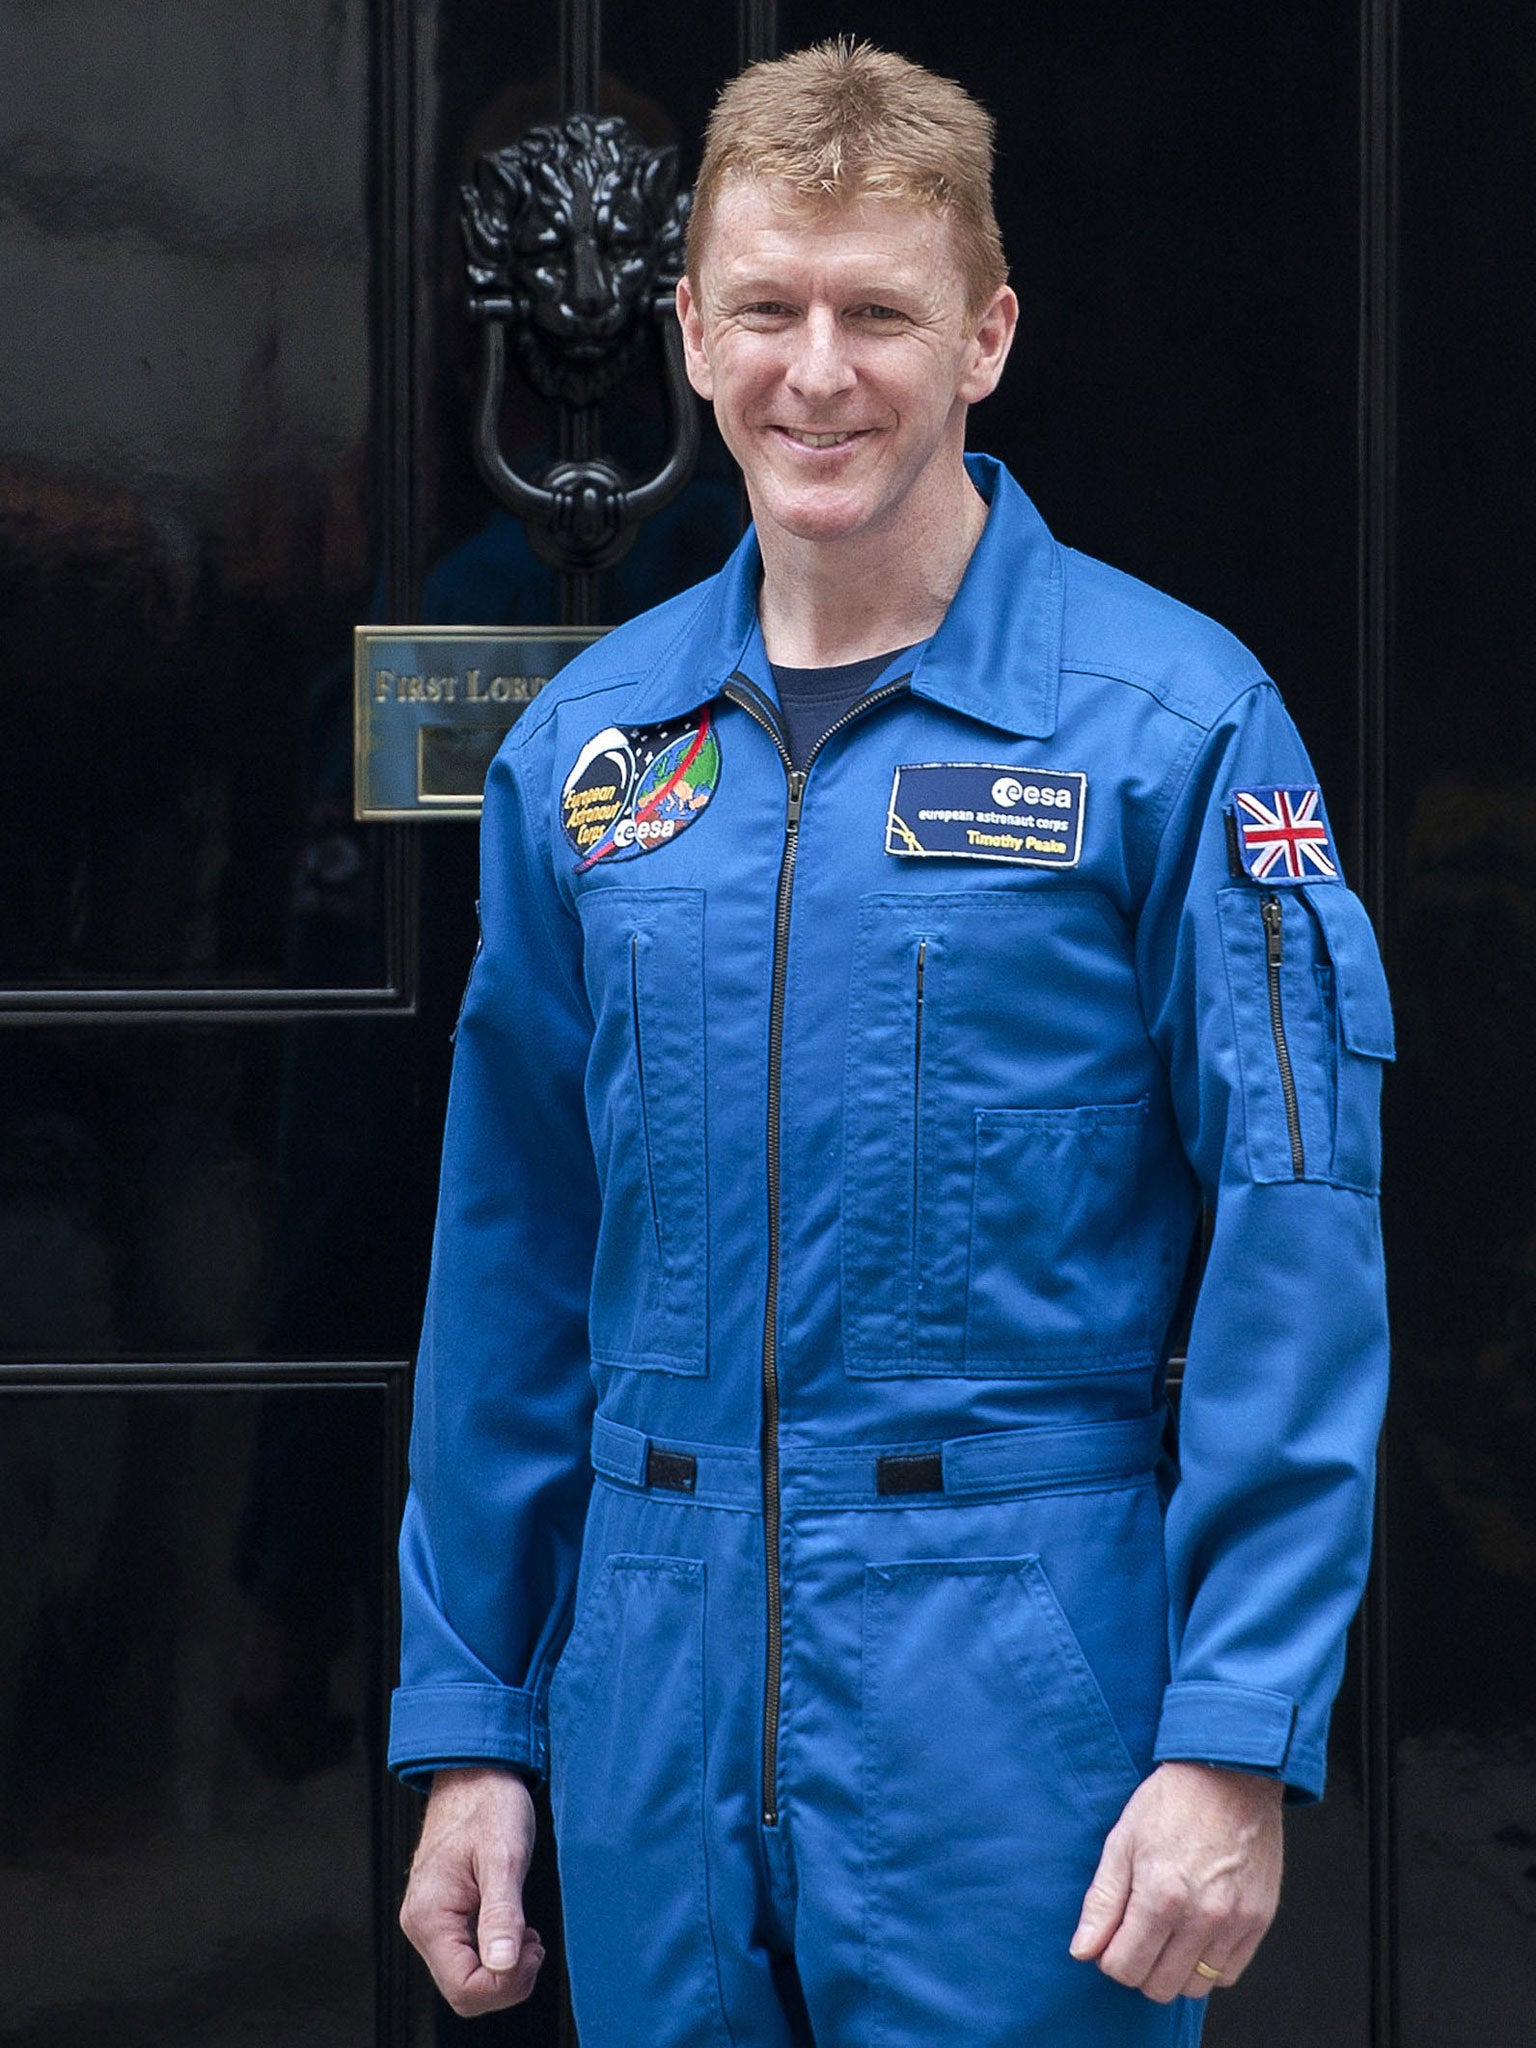 Major Tim Peake, astronaut